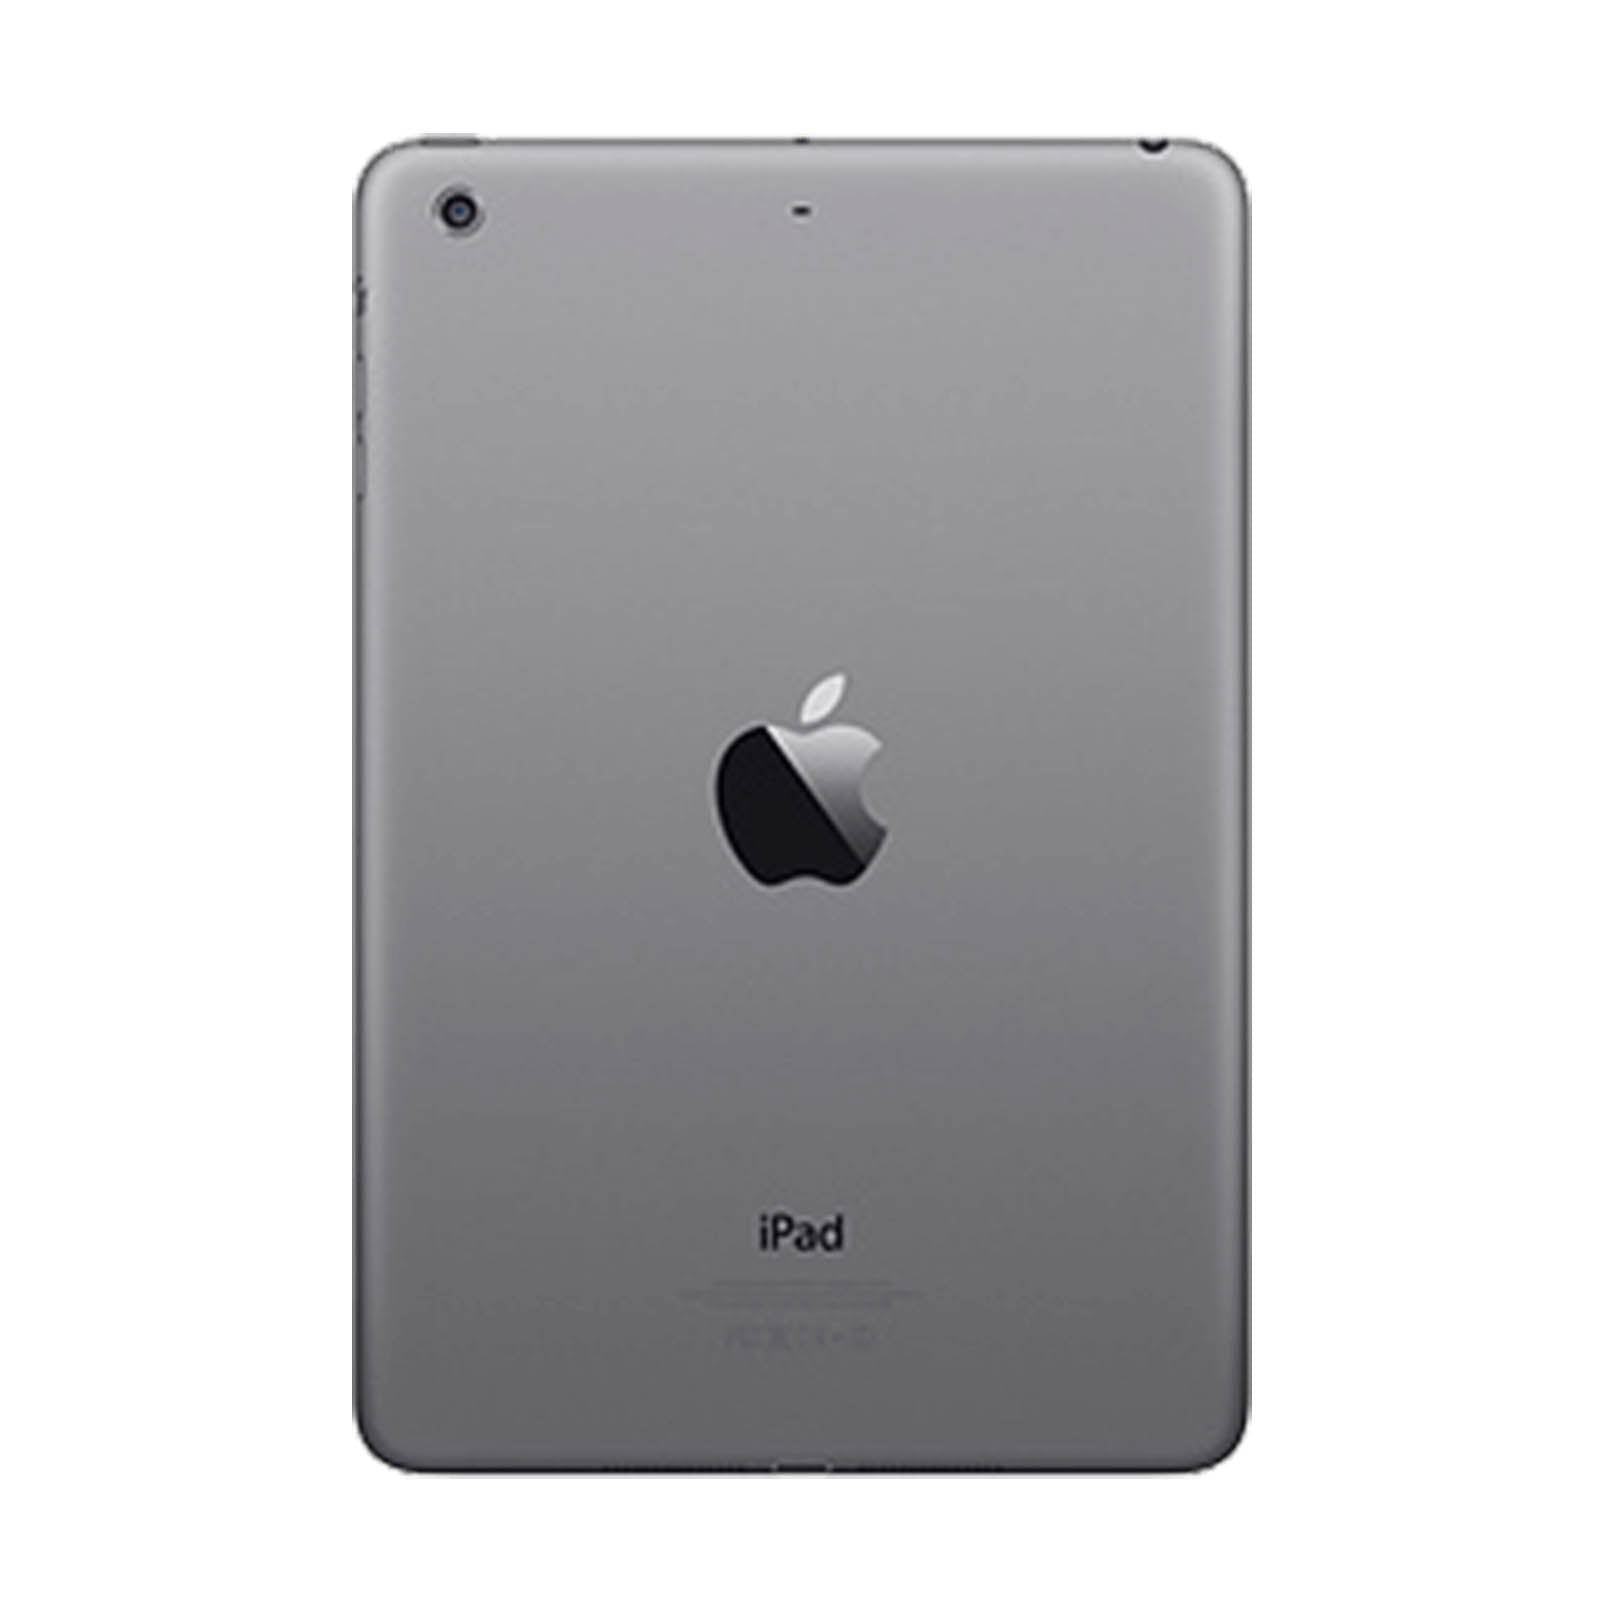 Apple iPad Mini 3 64GB Space Grey Good WiFi & Cellular